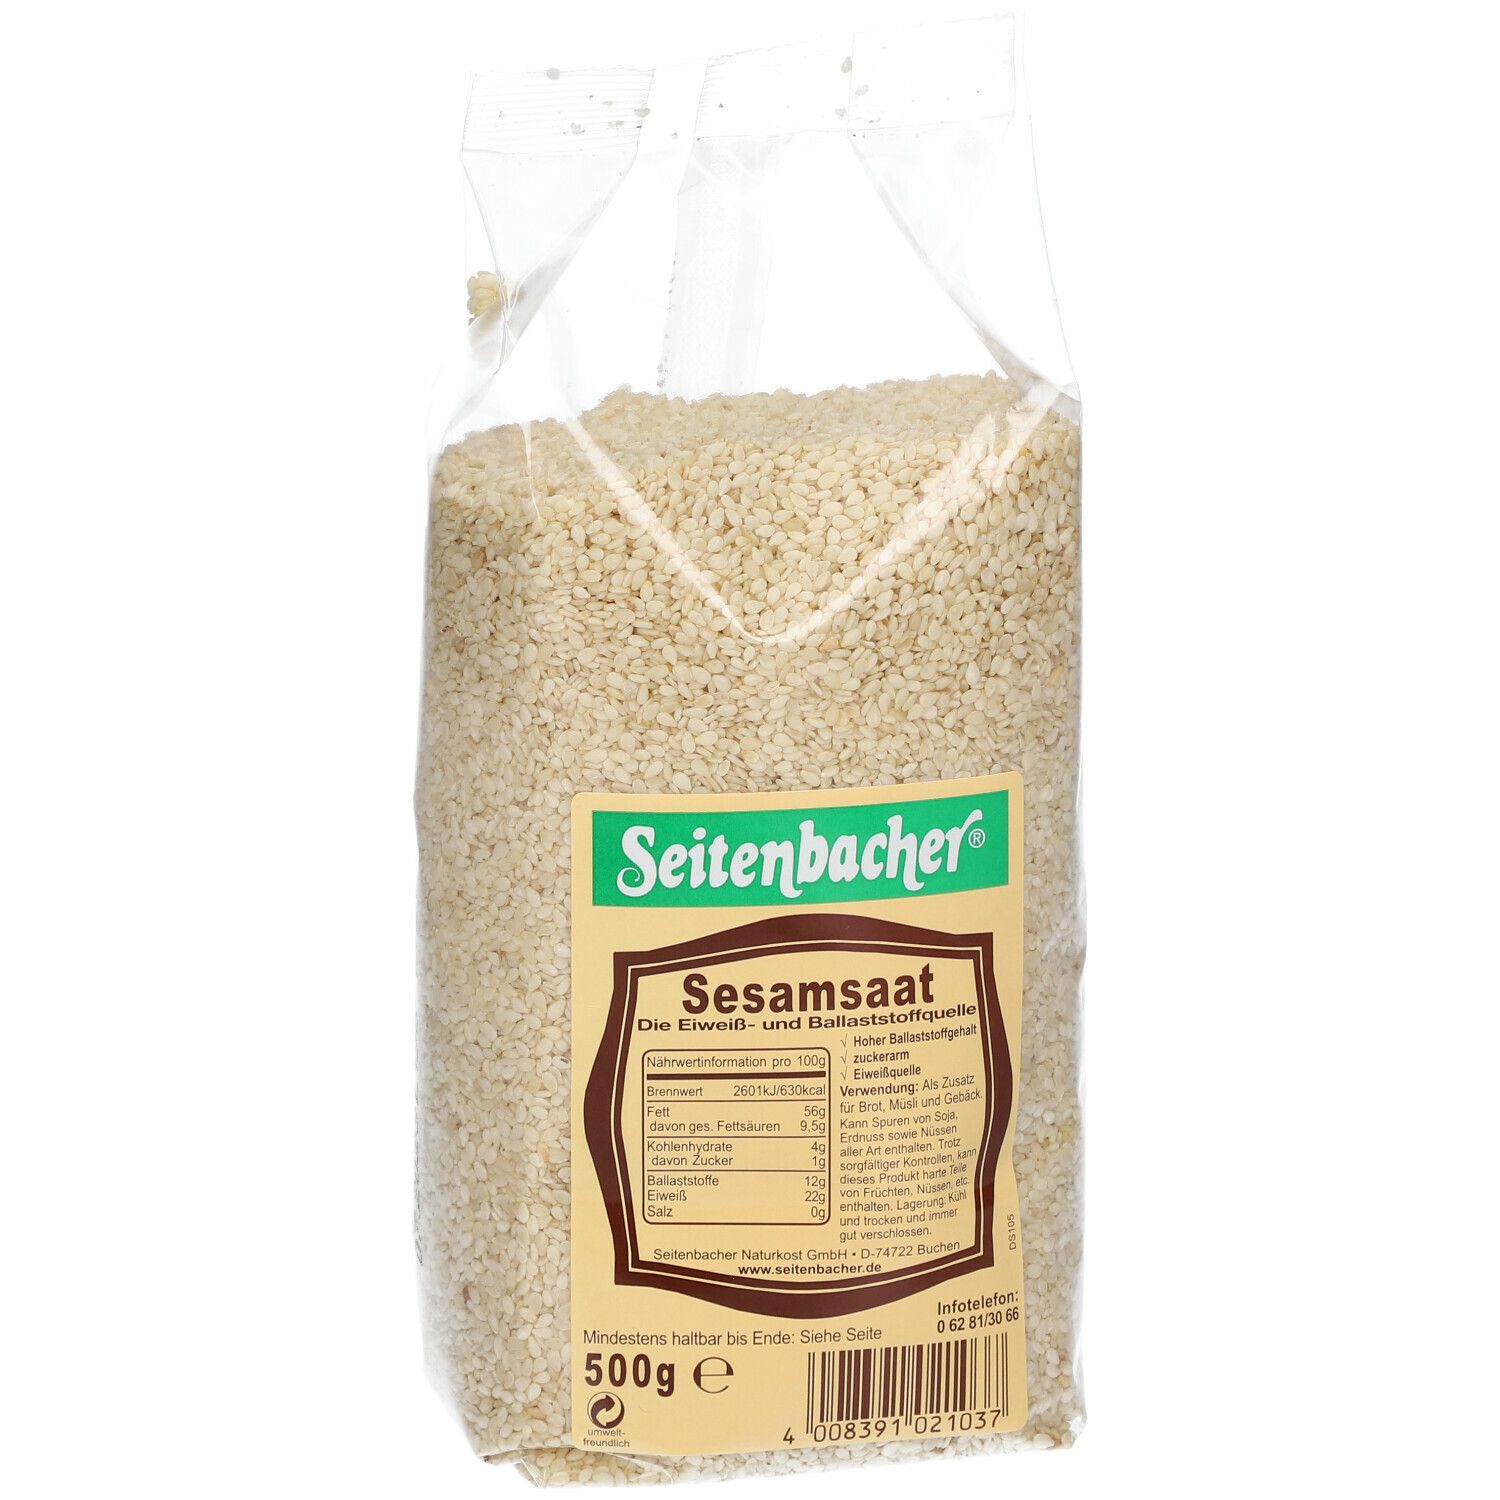 Seitenbacher® Sesamsaat